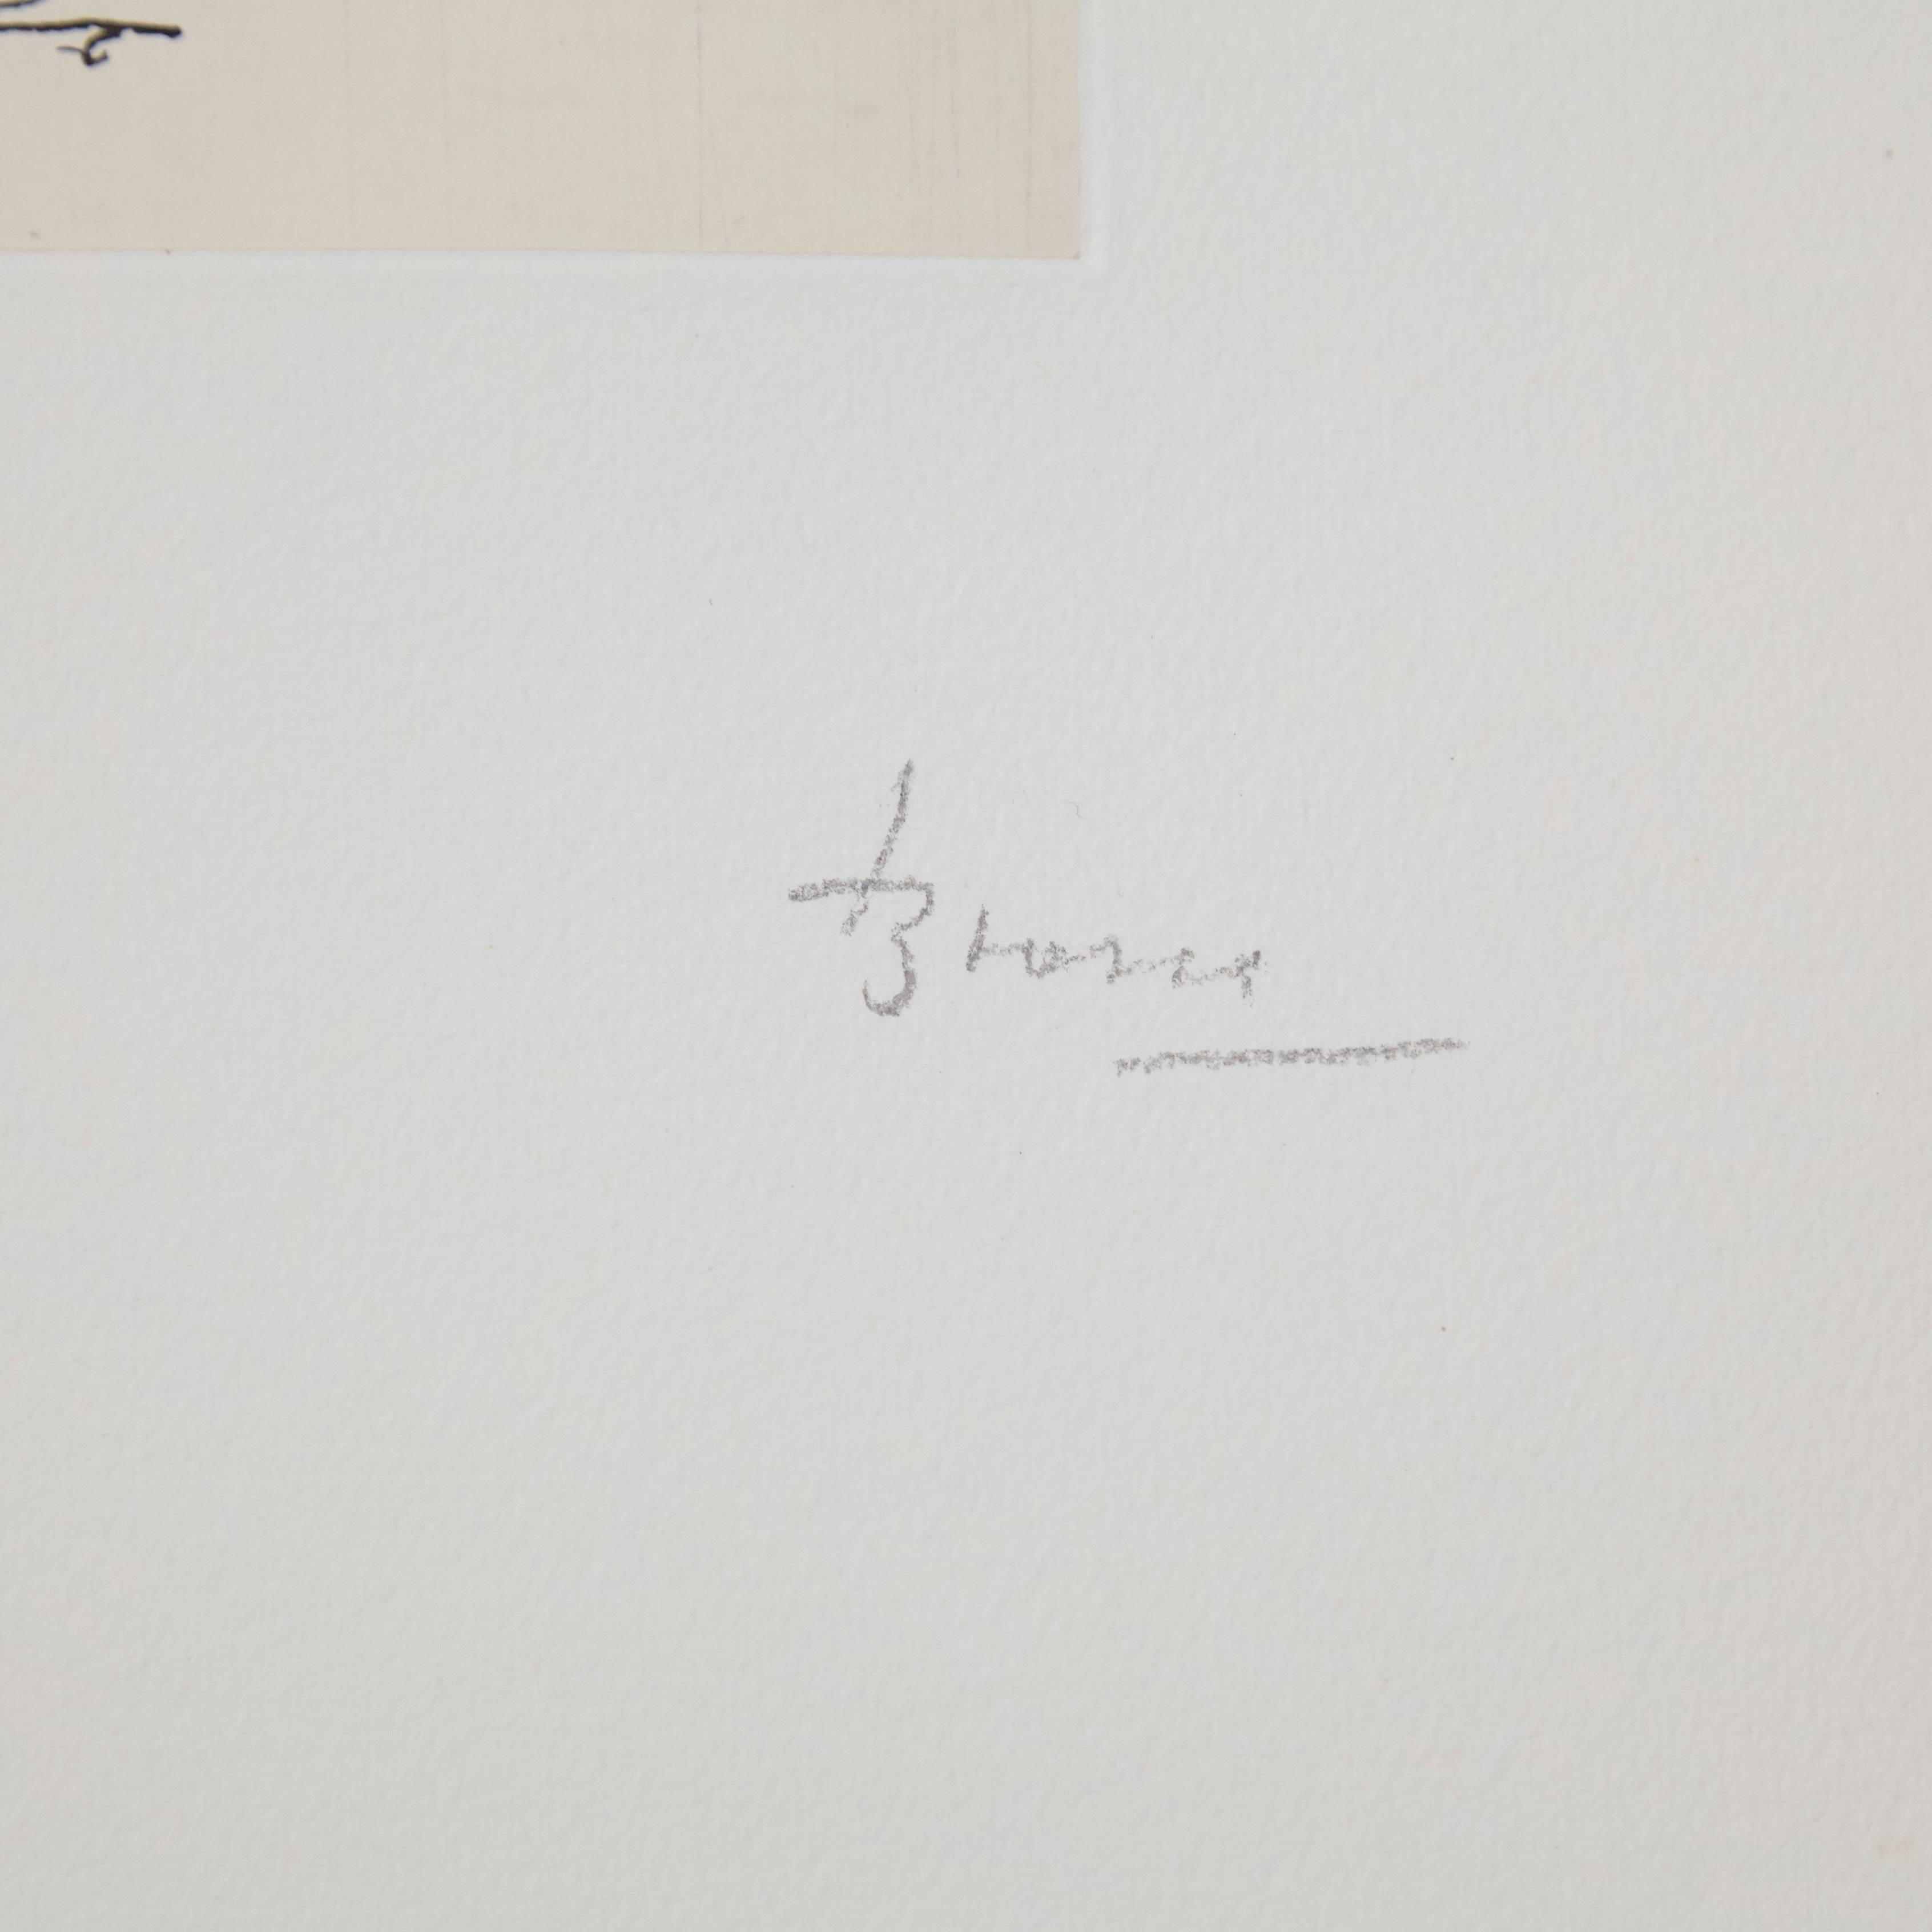 Lithographie réalisée par Joan Brossa, vers 1970.

Édition limitée à 50 exemplaires. Numéroté (36/50) et signé à la main.

En bon état d'origine.

Joan Brossa (1919-1998) était un poète, dramaturge, graphiste et artiste visuel catalan. Il a